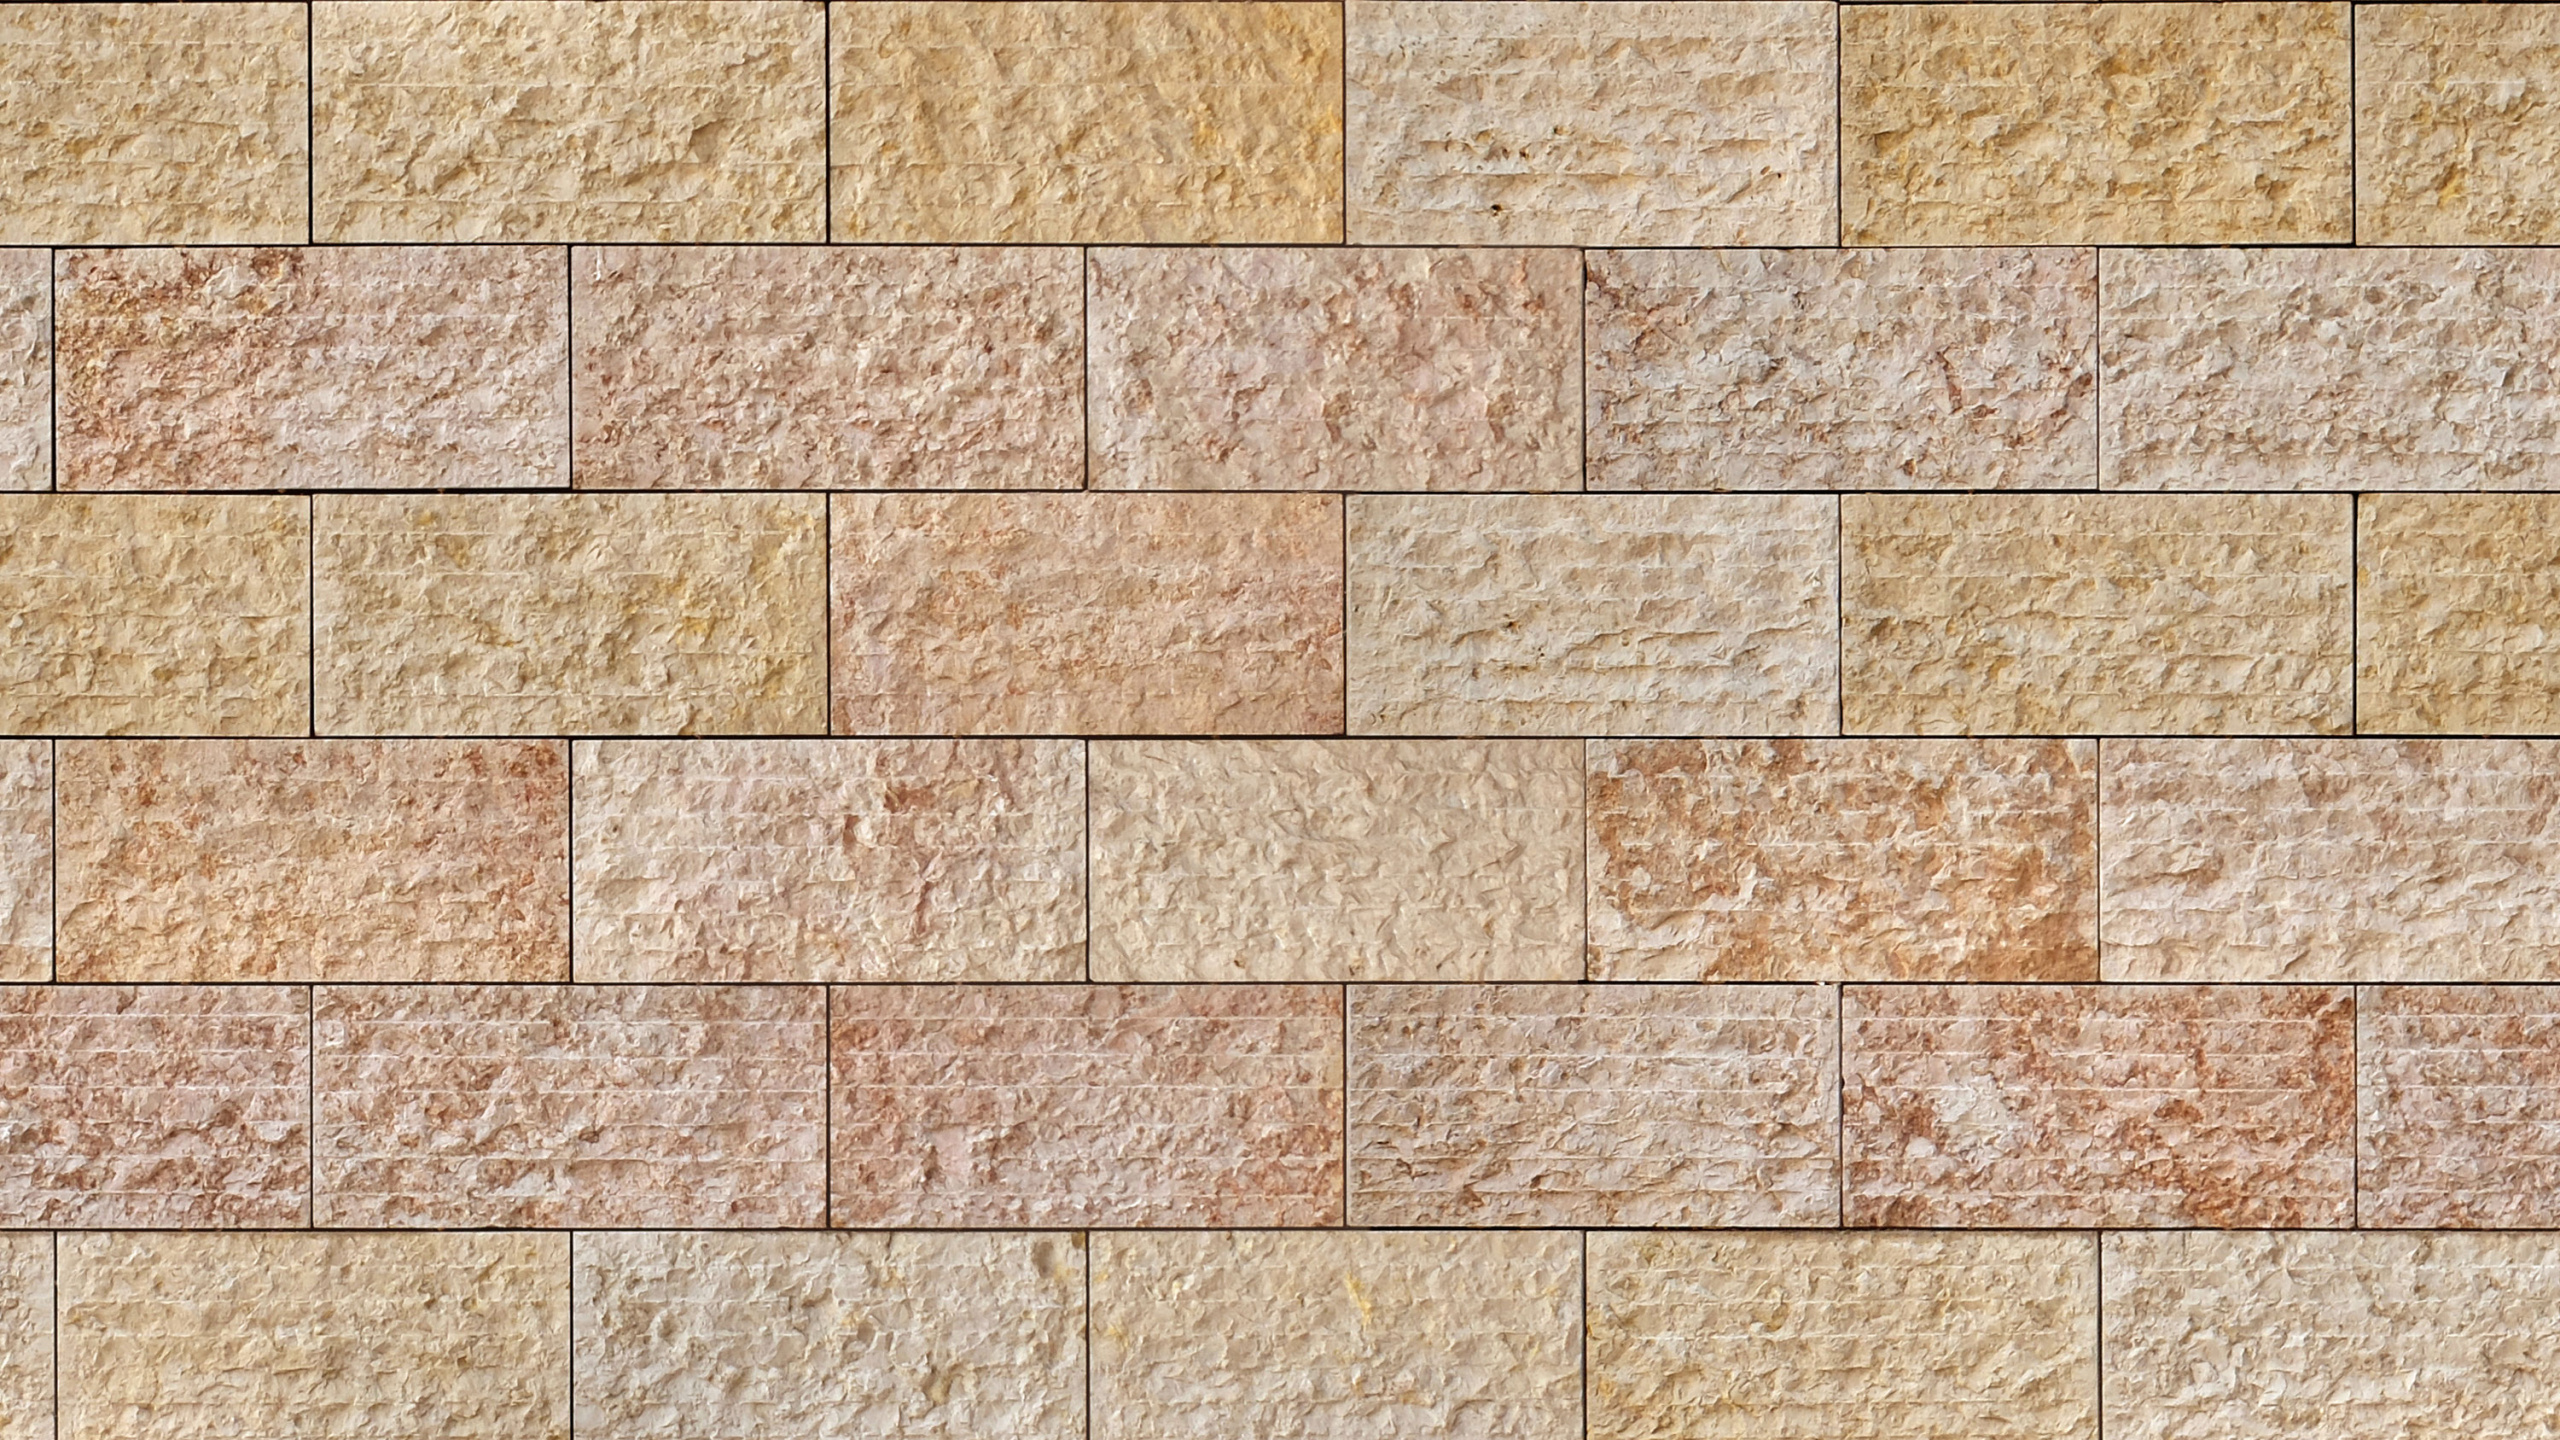 石壁, 砖, 砌砖, 砖石, 瓷砖 壁纸 2560x1440 允许